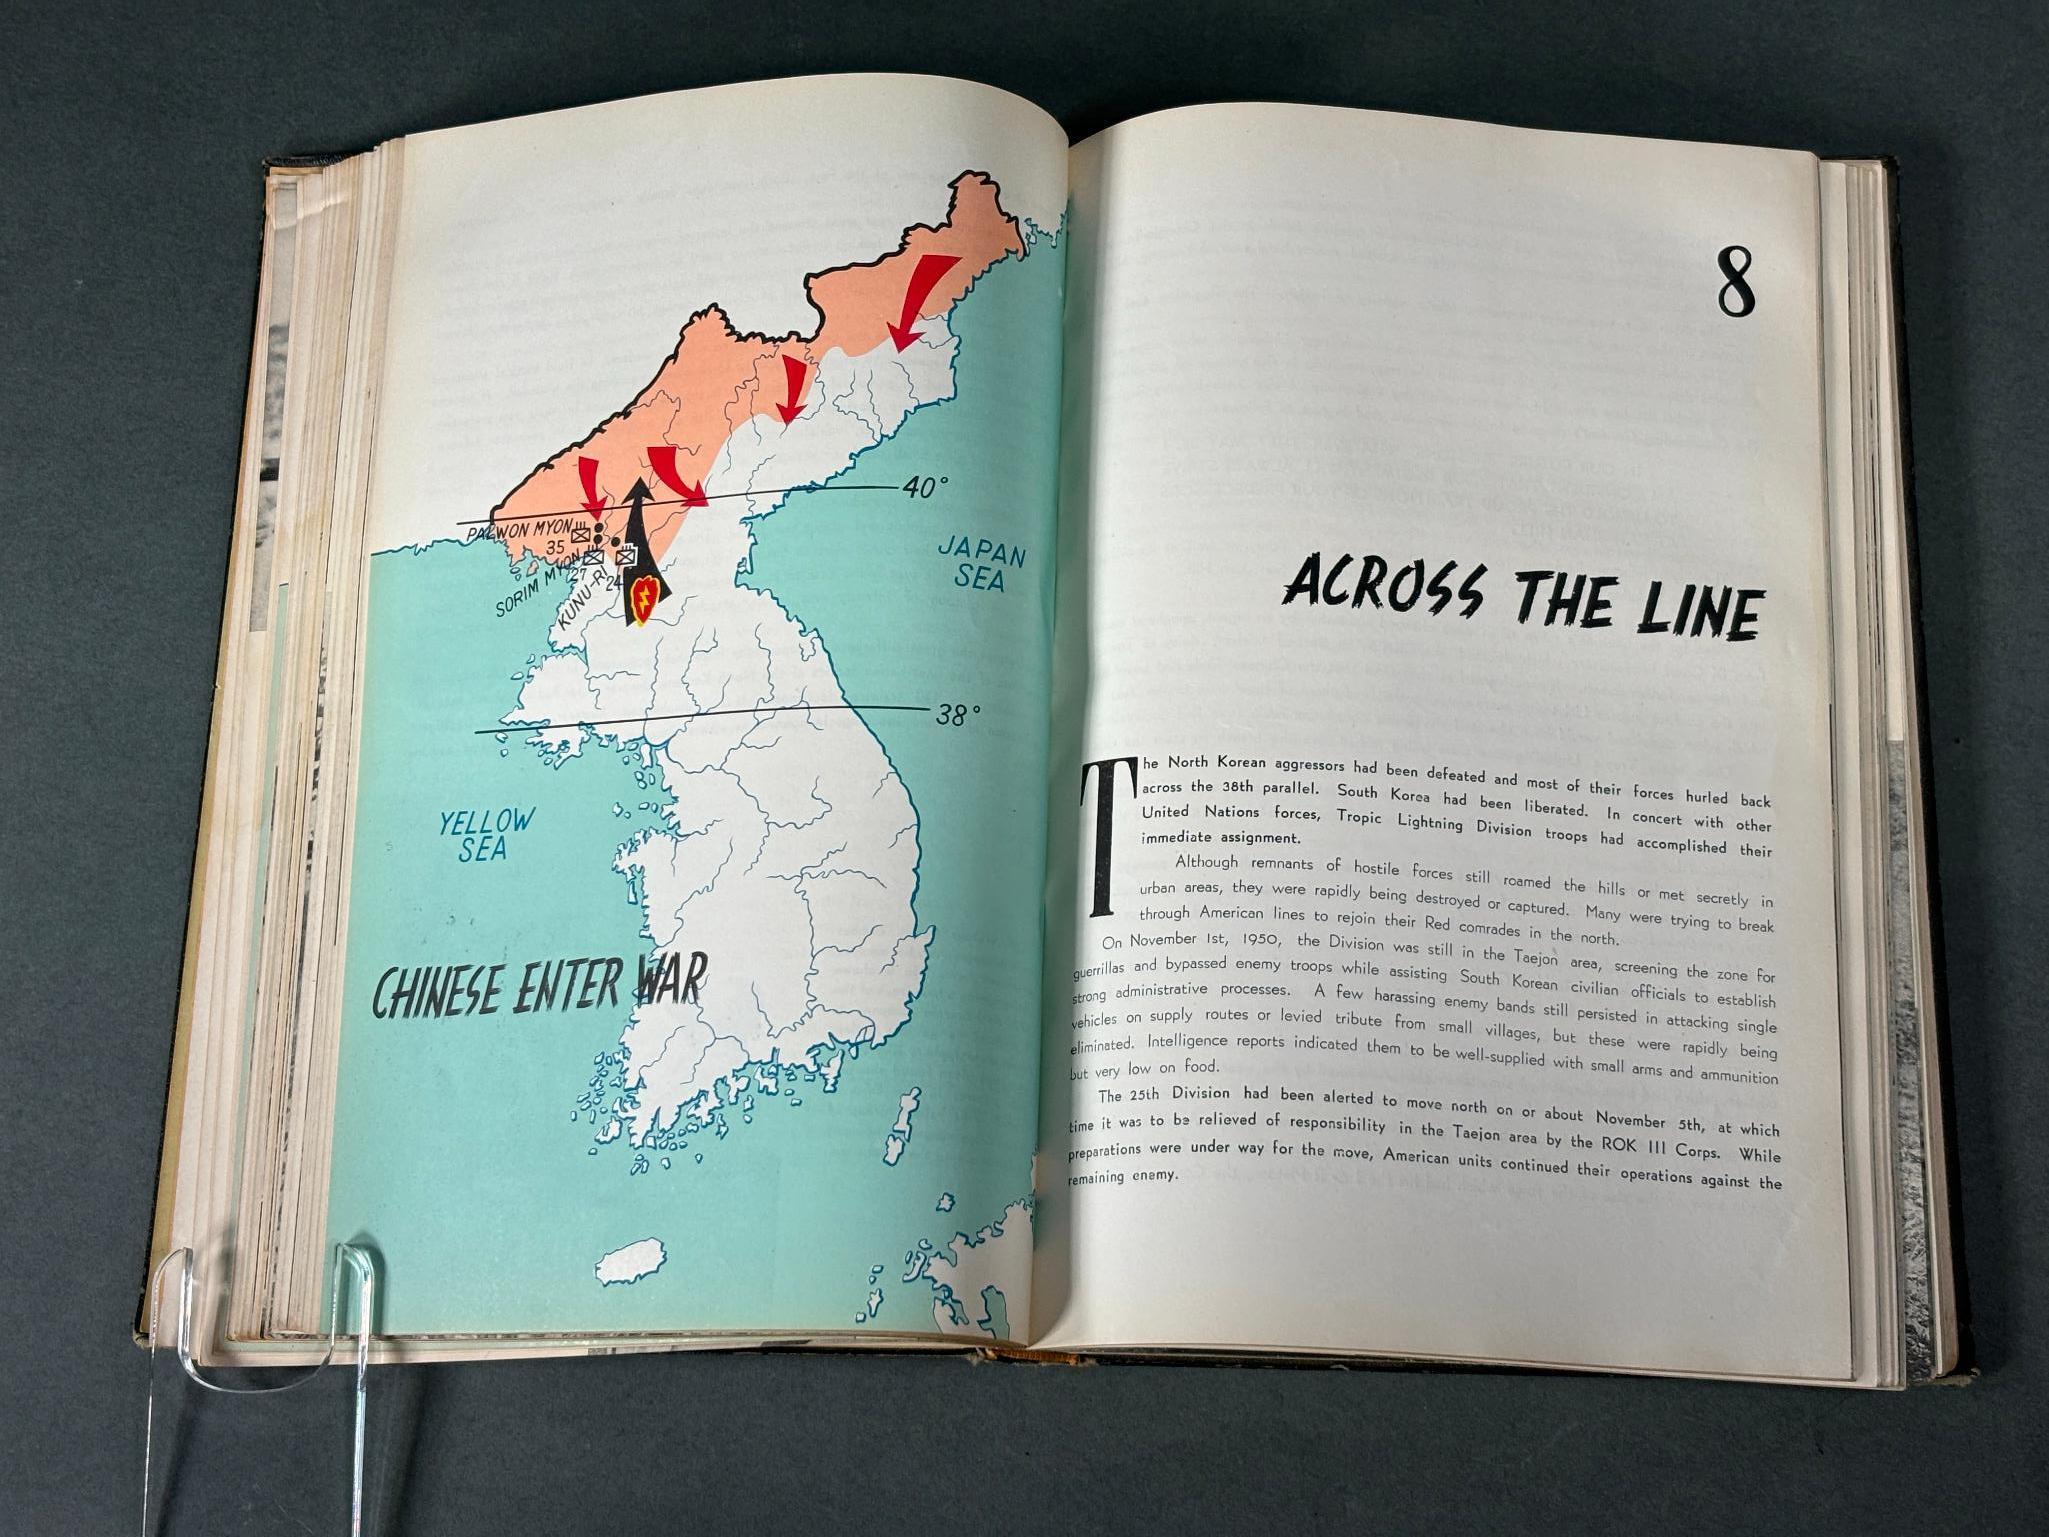 KOREAN WAR 25TH DIVISION HISTORY THROUGH 1951